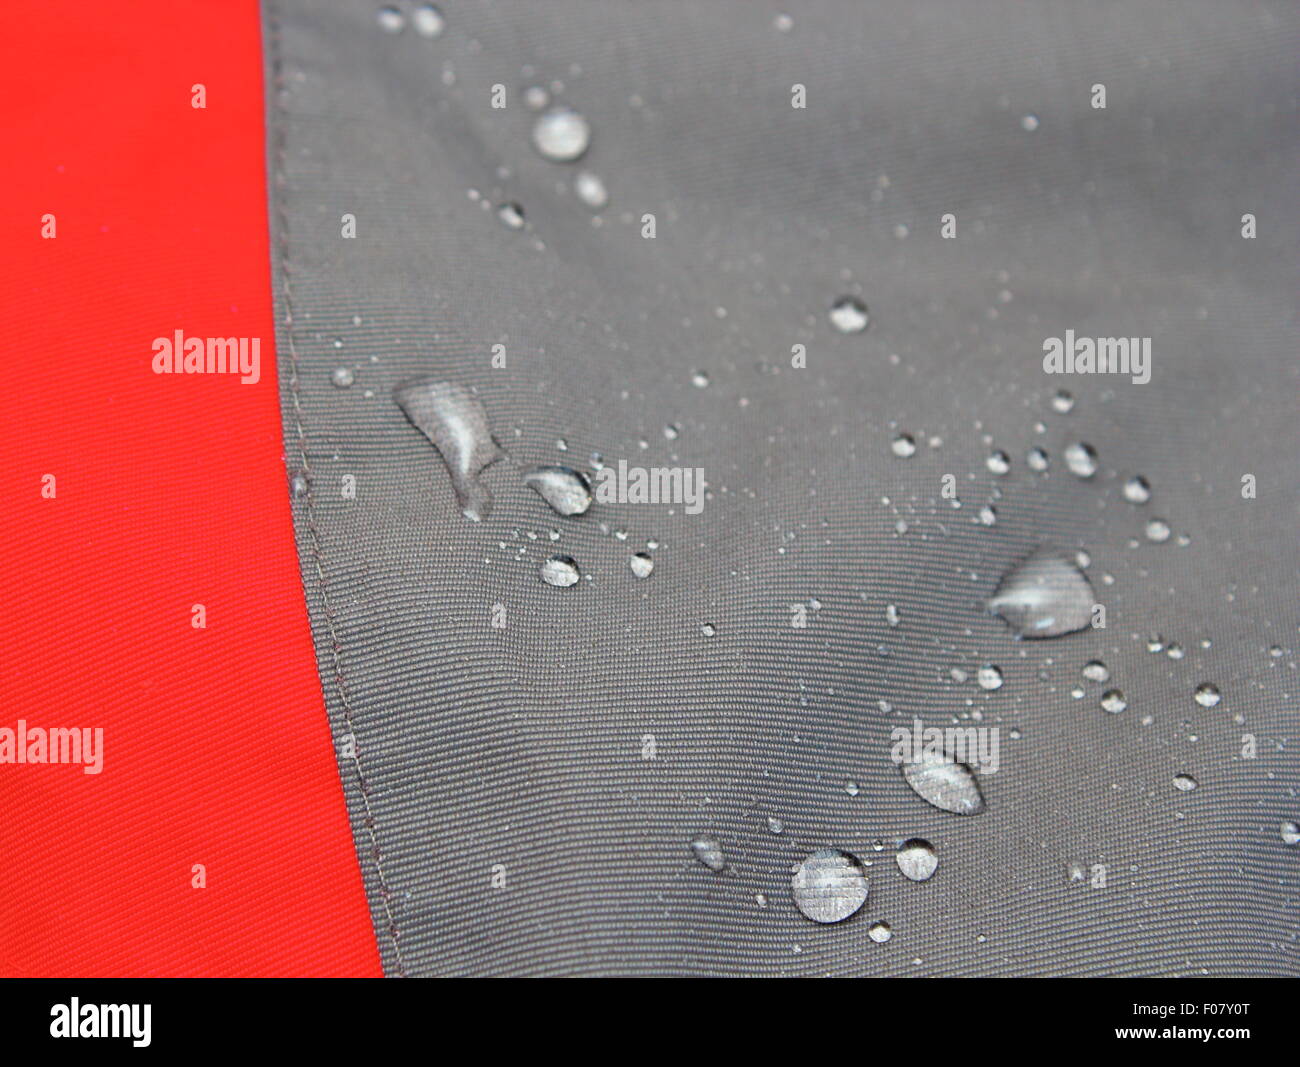 Dettaglio di impermeabile camicia outdoor - è possibile vedere le gocce di liquido sul materiale idrorepellente Foto Stock